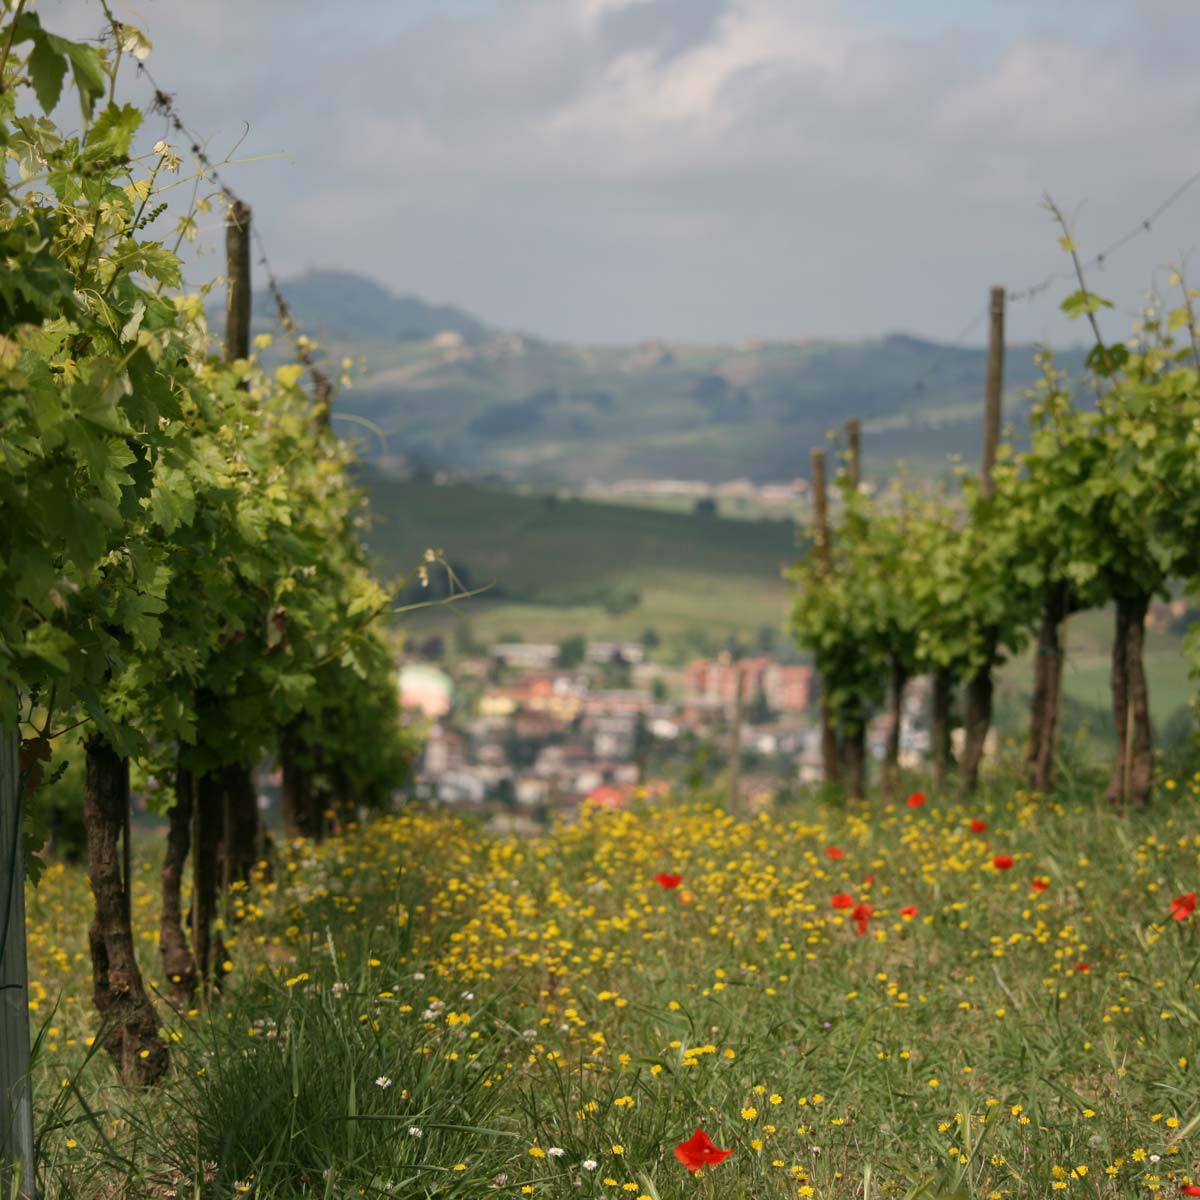 Flowers in the vineyard